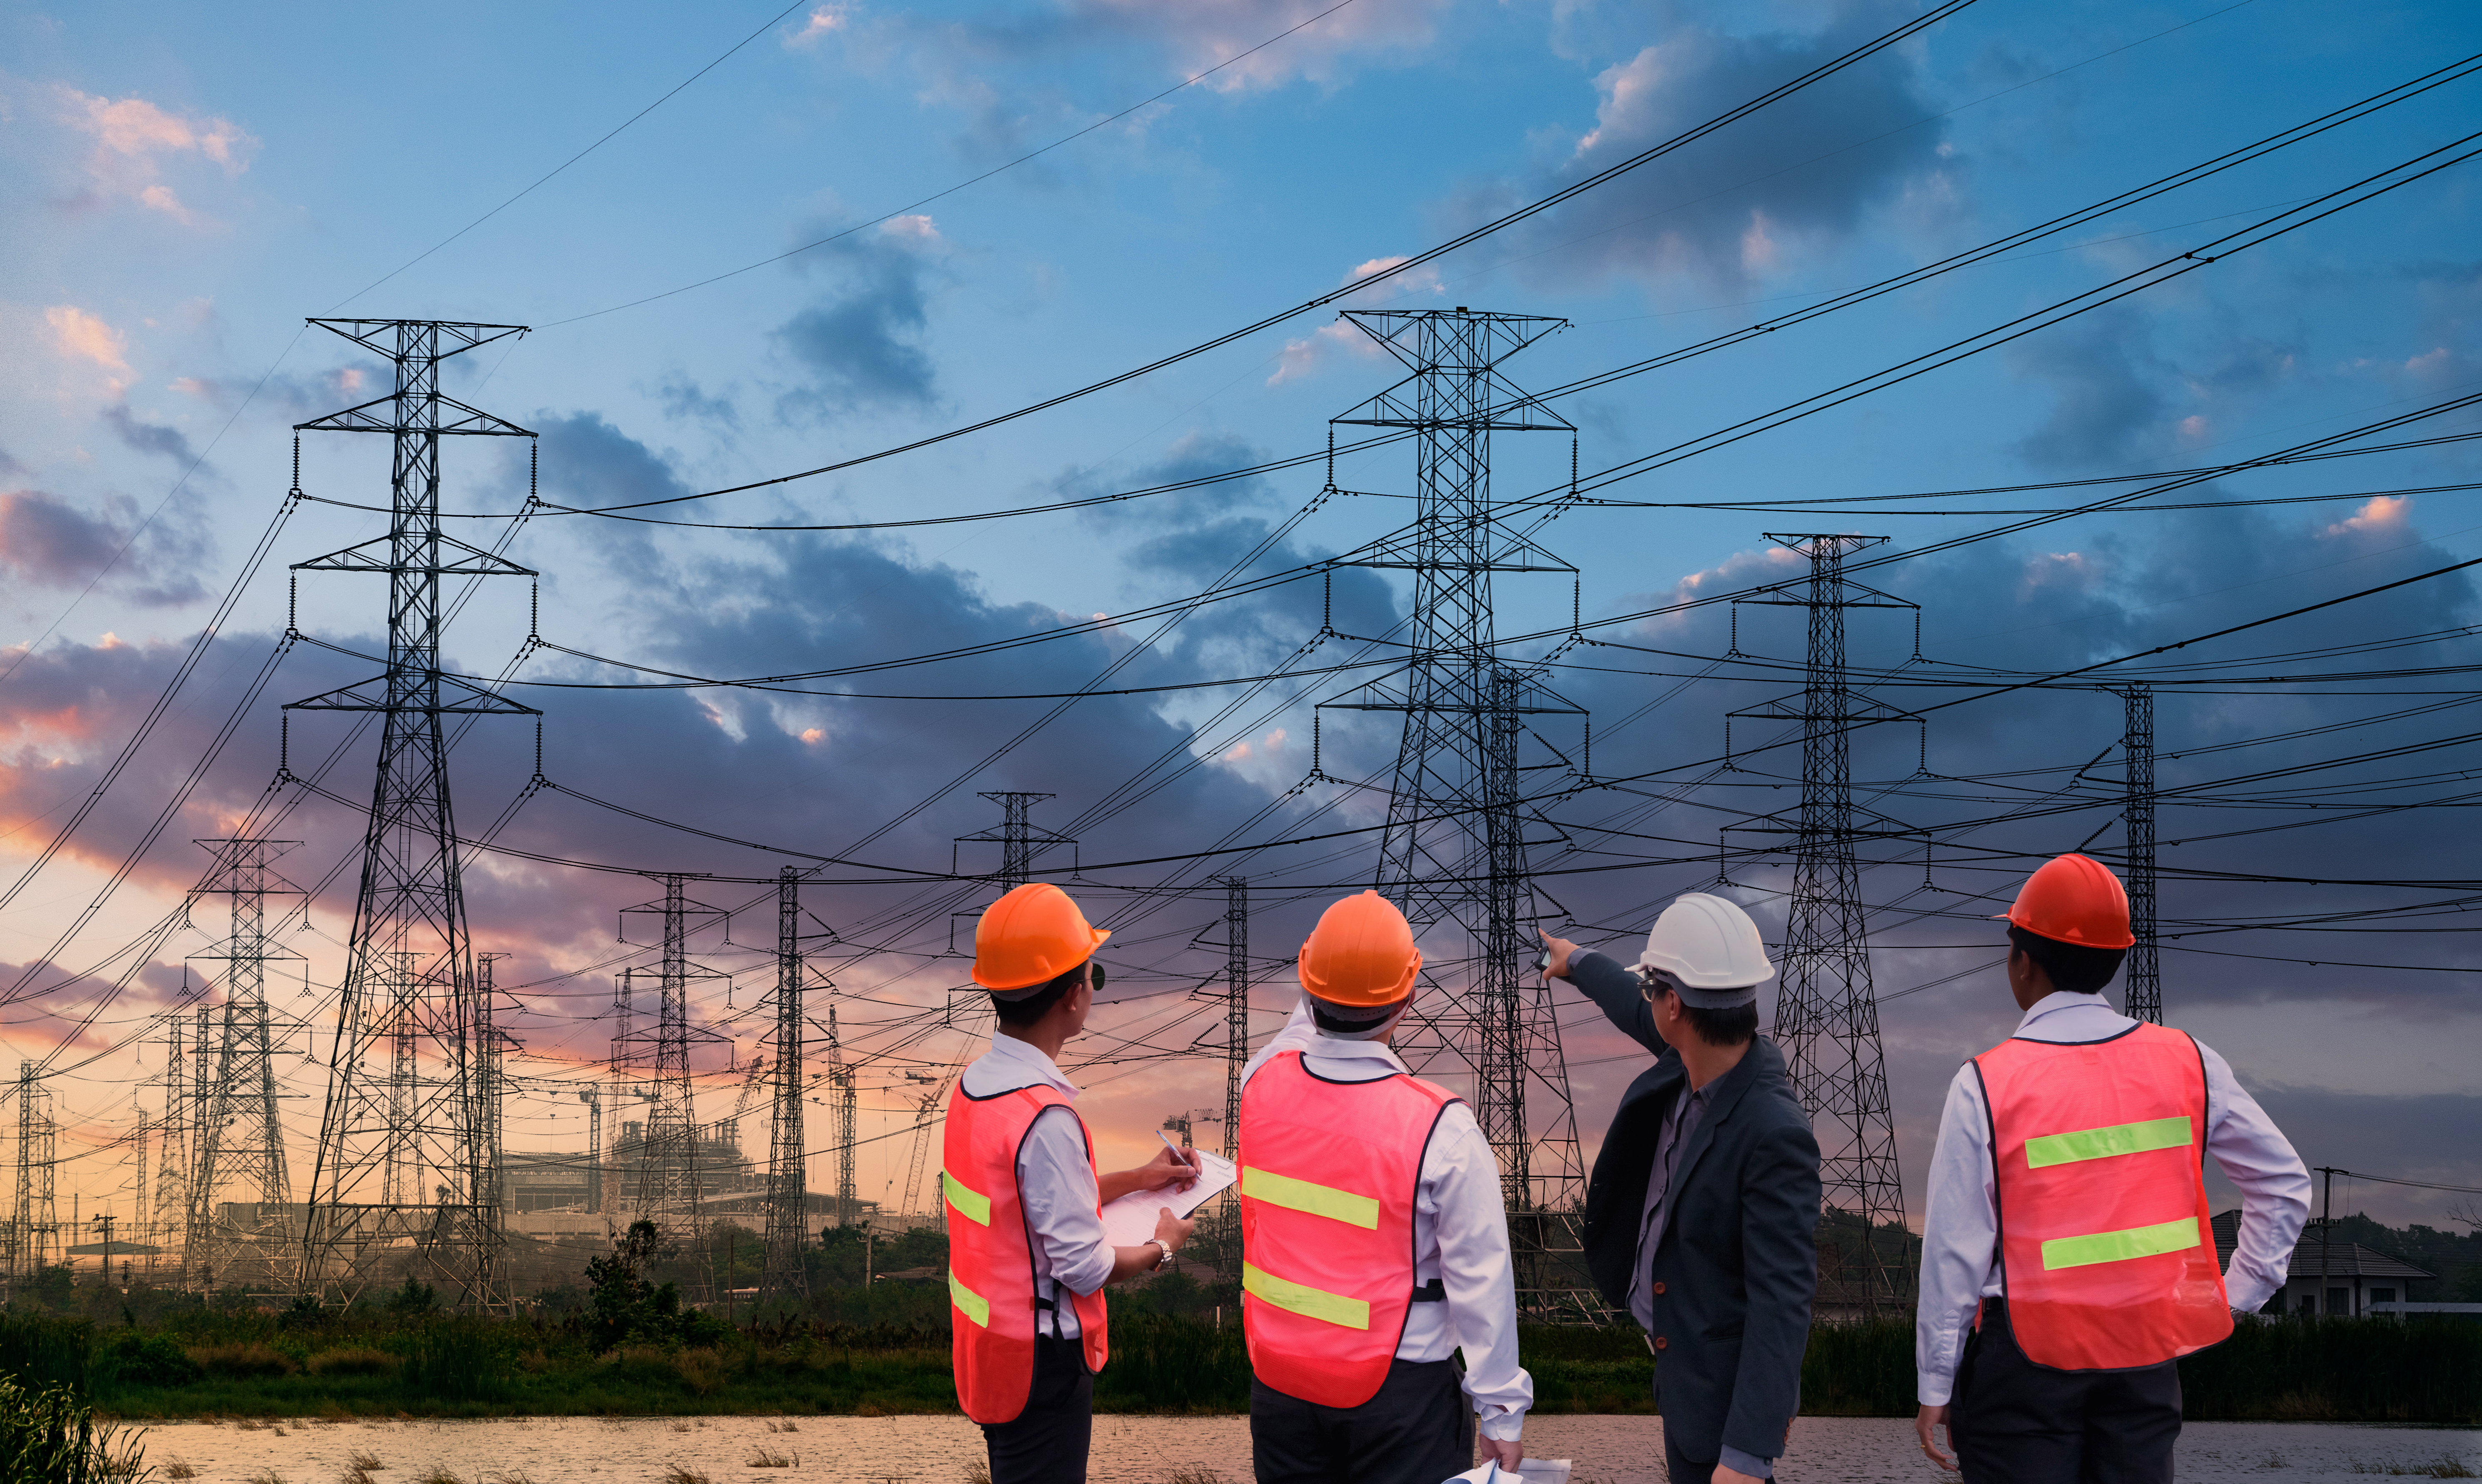 Ingeniería UAI realizará masterclass gratuita “Modernización de la distribución para un futuro energético sostenible”